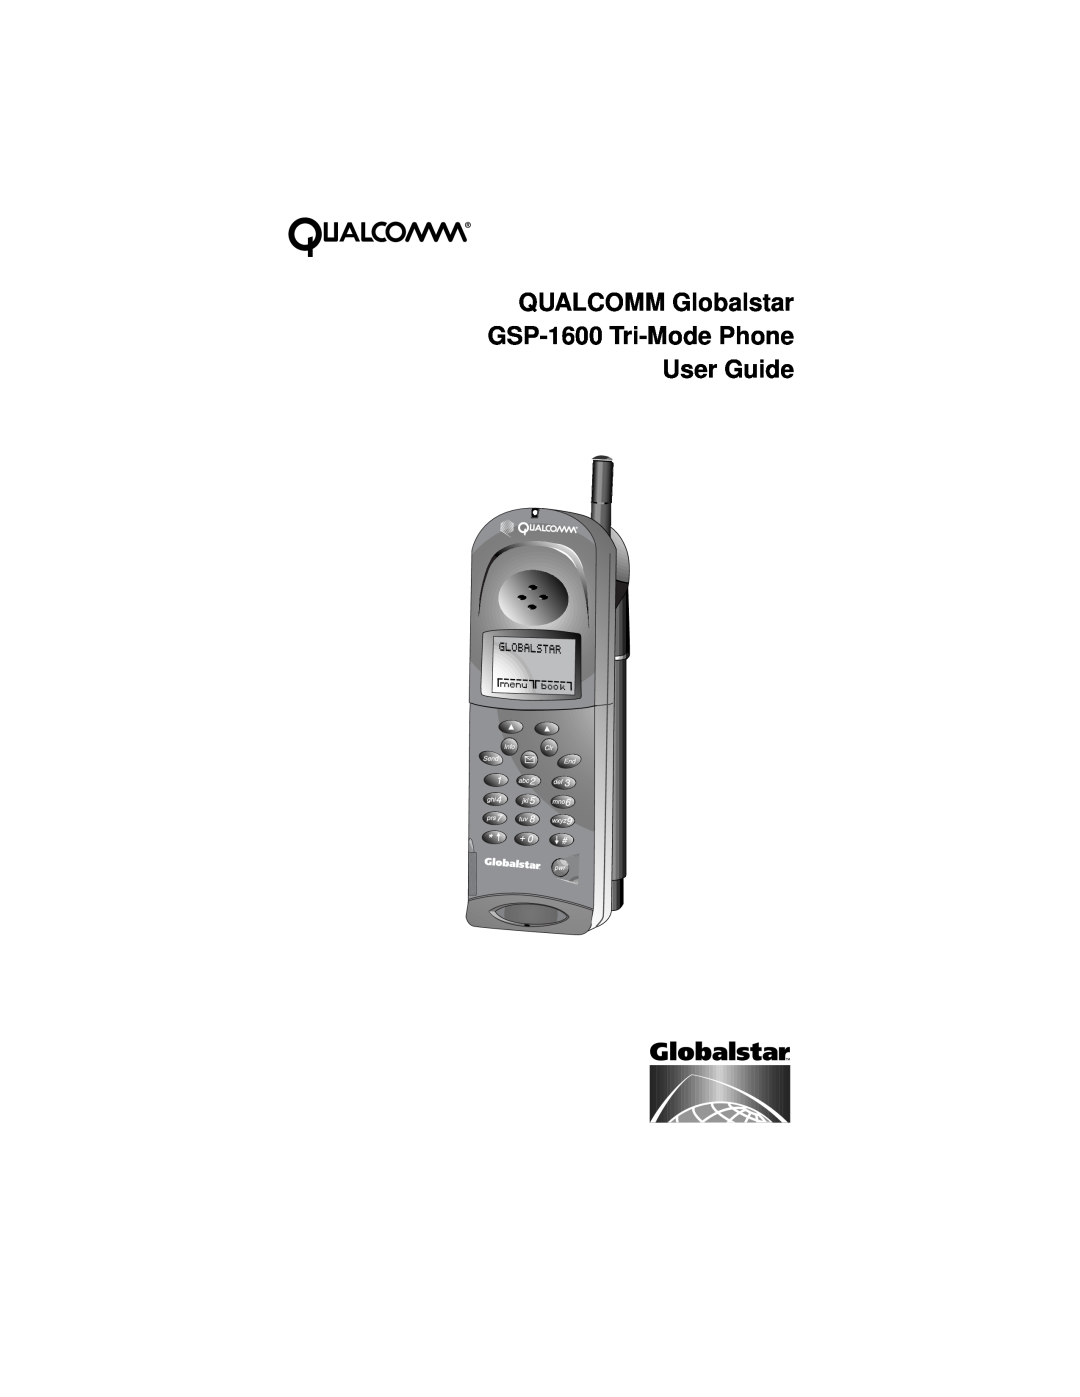 Qualcomm GSP-1600 manual 48$/&200*OREDOVWDU, 637UL0RGH3KRQH 8VHU*XLGH 